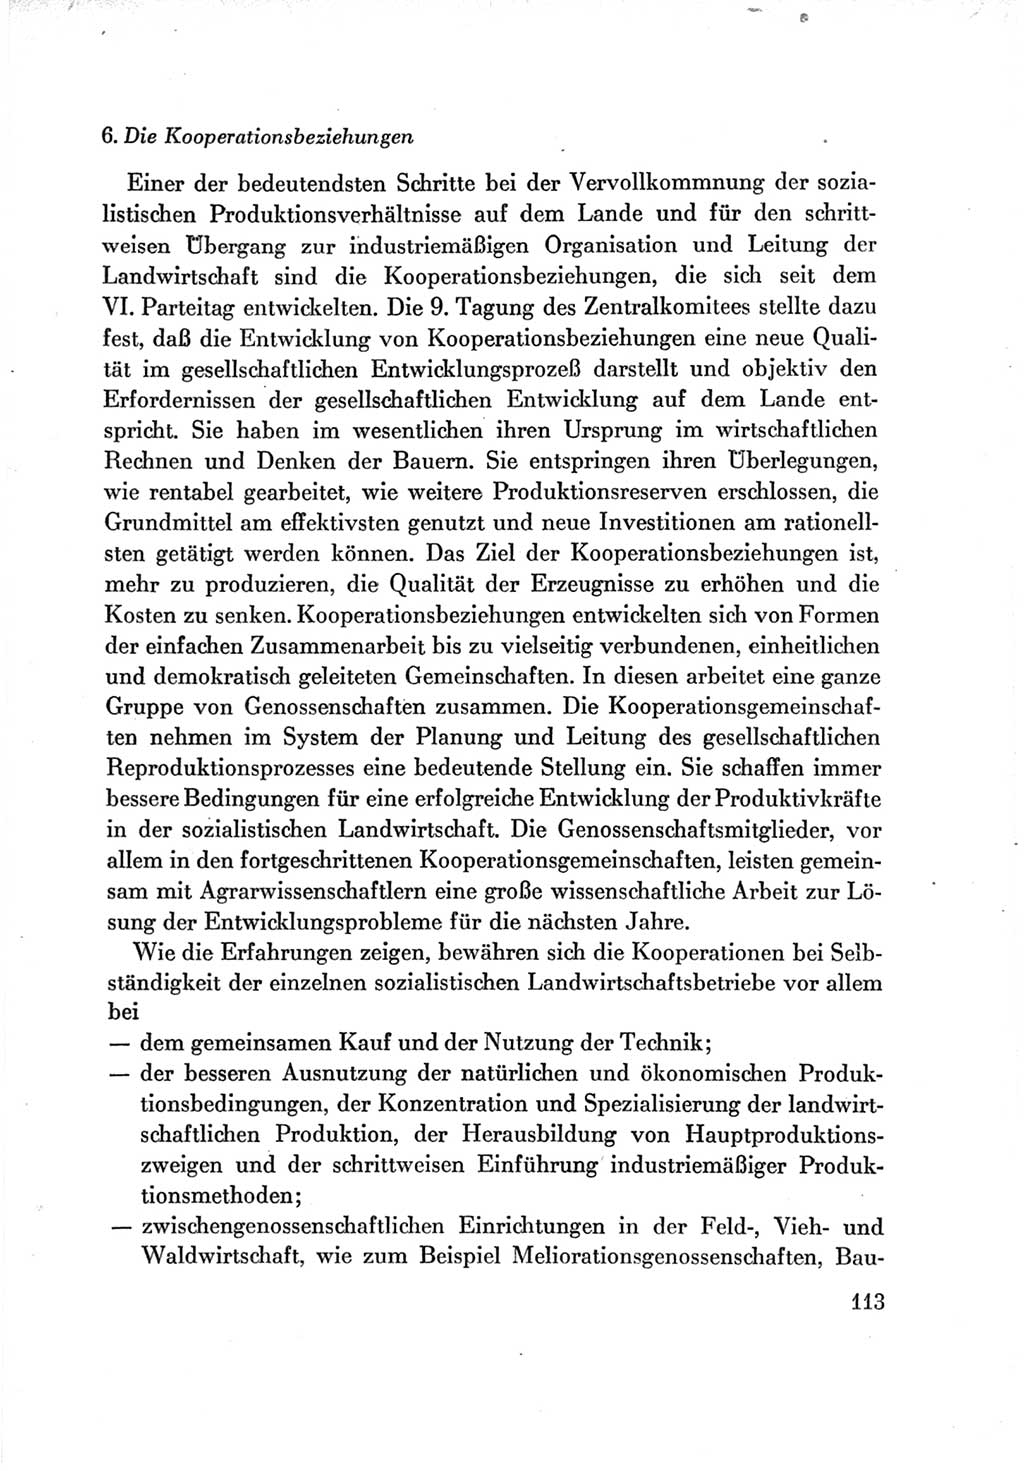 Protokoll der Verhandlungen des Ⅶ. Parteitages der Sozialistischen Einheitspartei Deutschlands (SED) [Deutsche Demokratische Republik (DDR)] 1967, Band Ⅳ, Seite 113 (Prot. Verh. Ⅶ. PT SED DDR 1967, Bd. Ⅳ, S. 113)